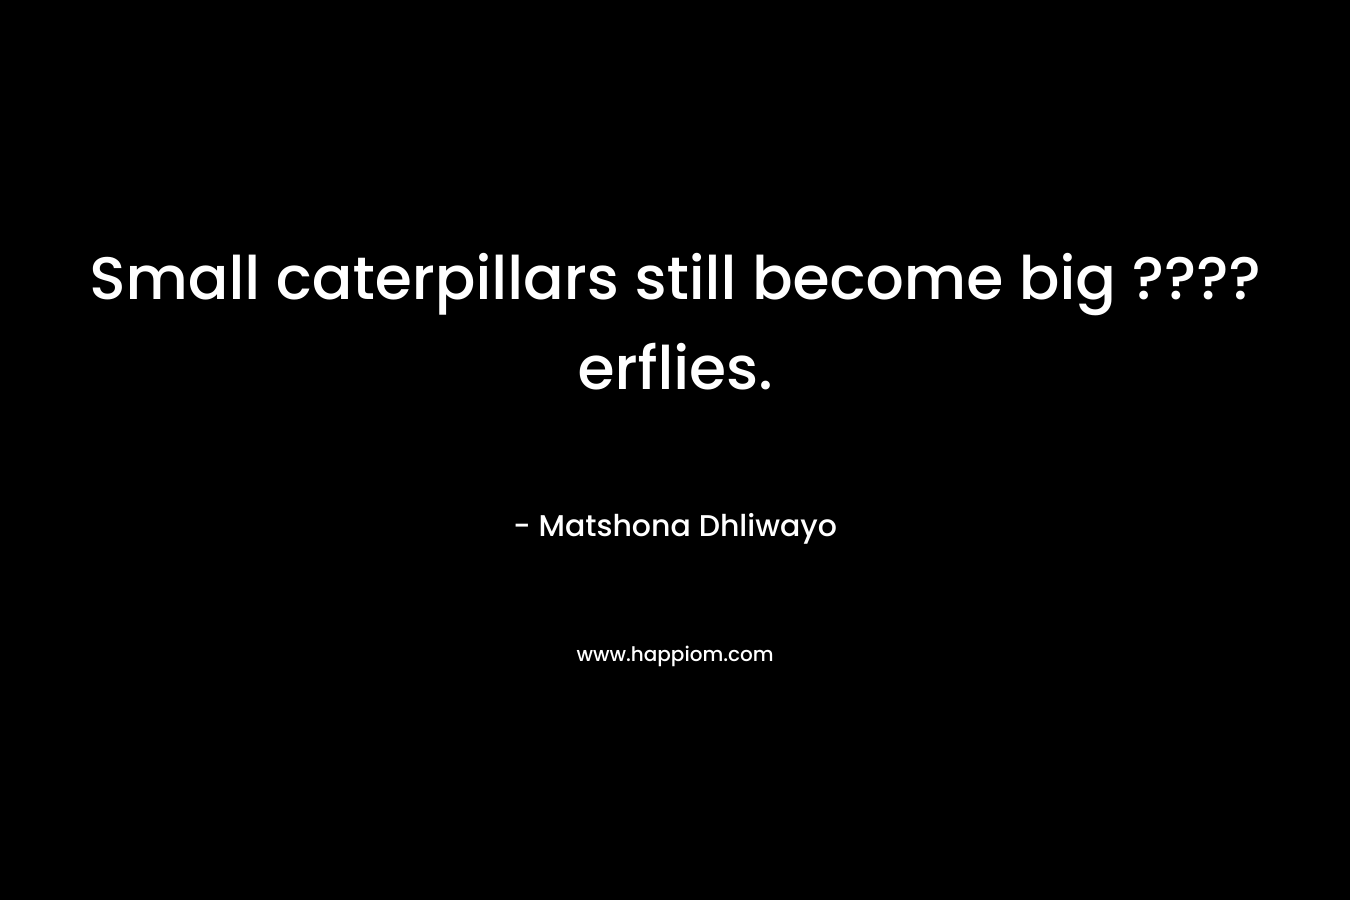 Small caterpillars still become big ????erflies.